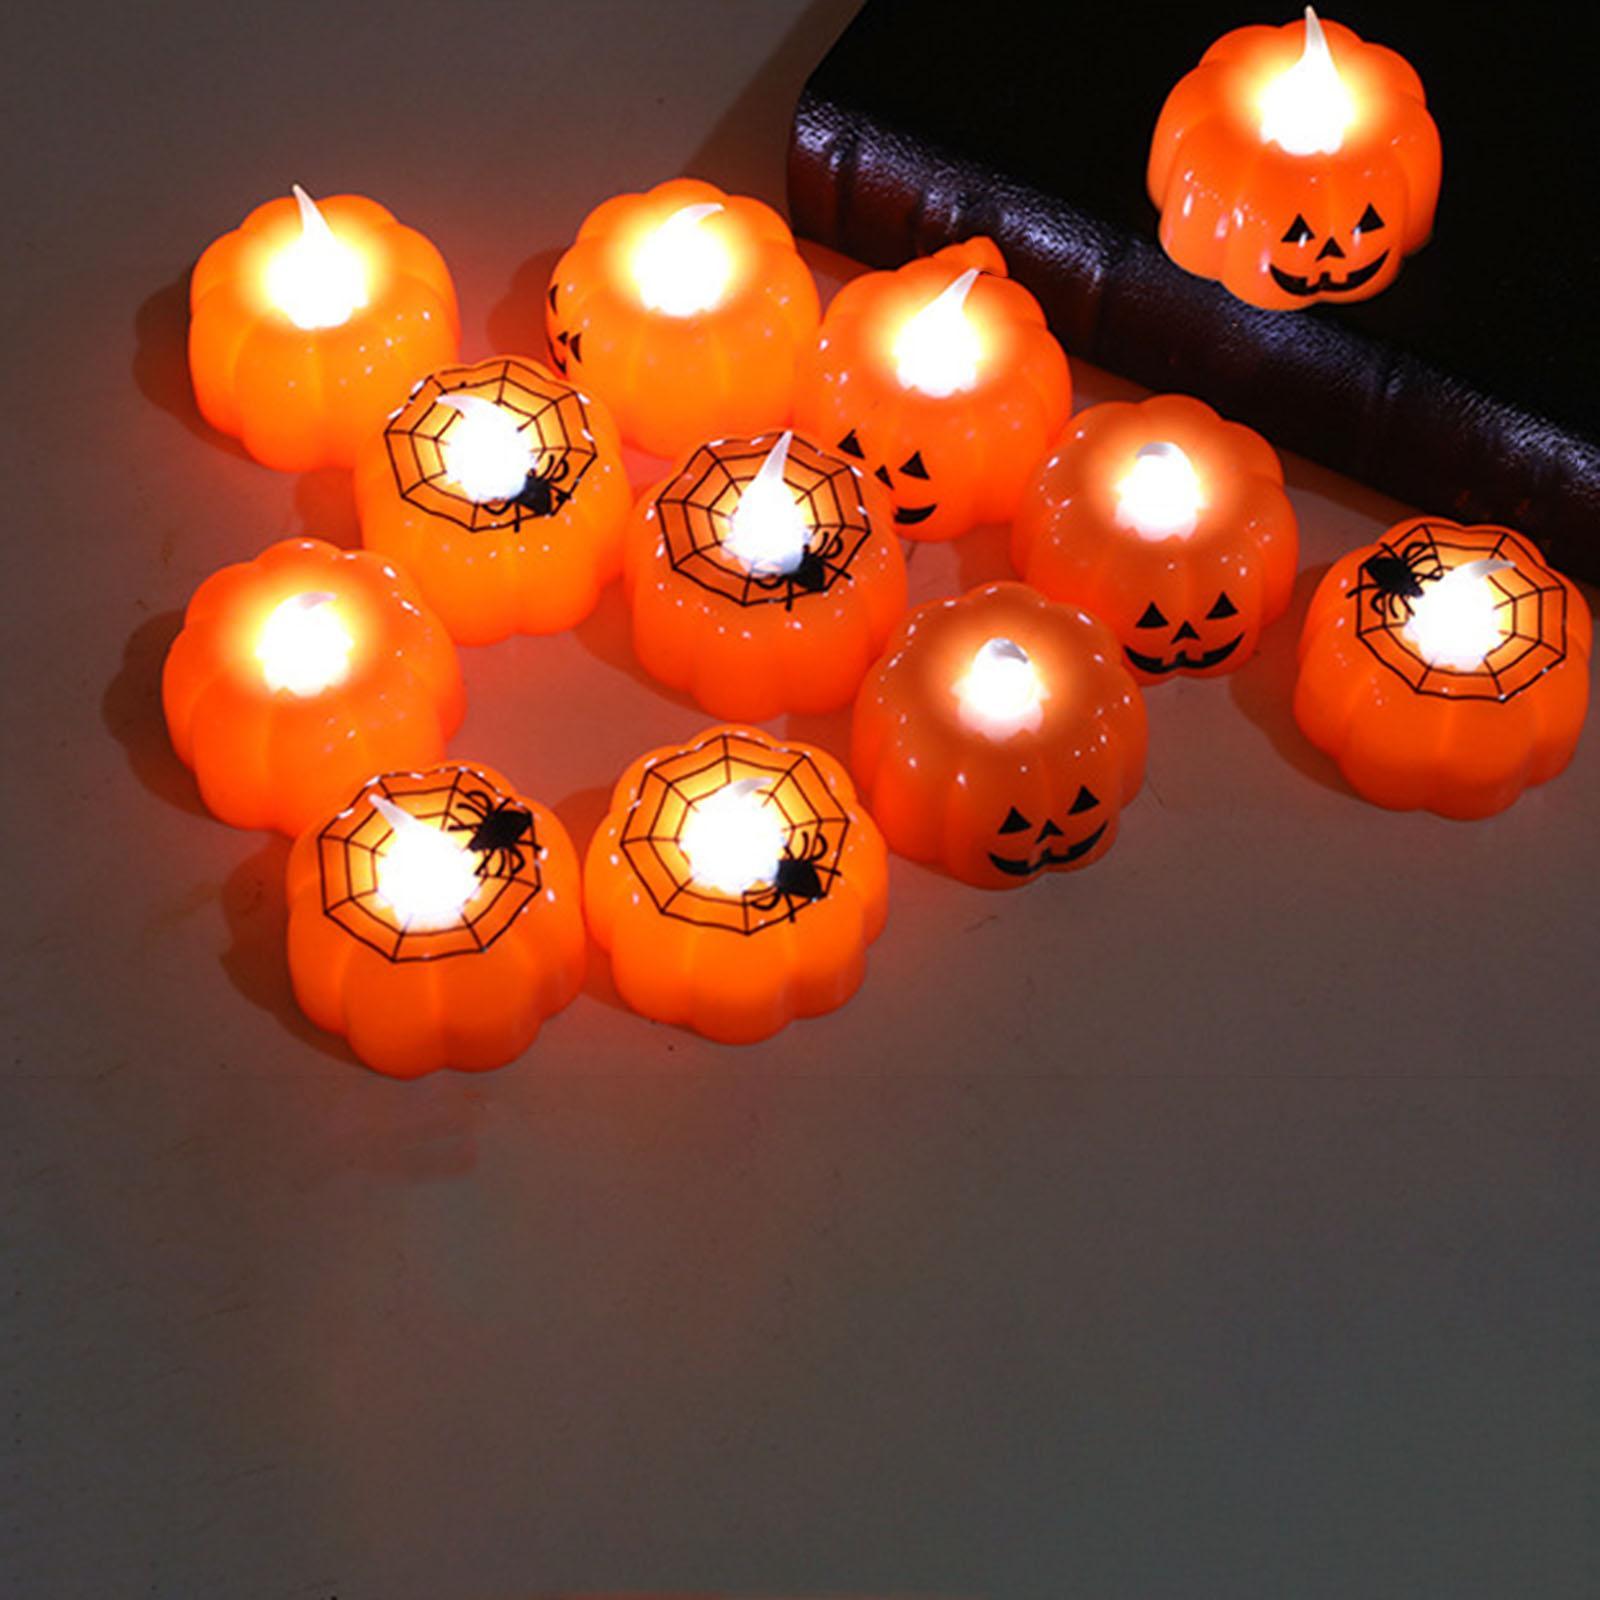 3D Pumpkin Candle Light Halloween LED Tealights Fall Festival